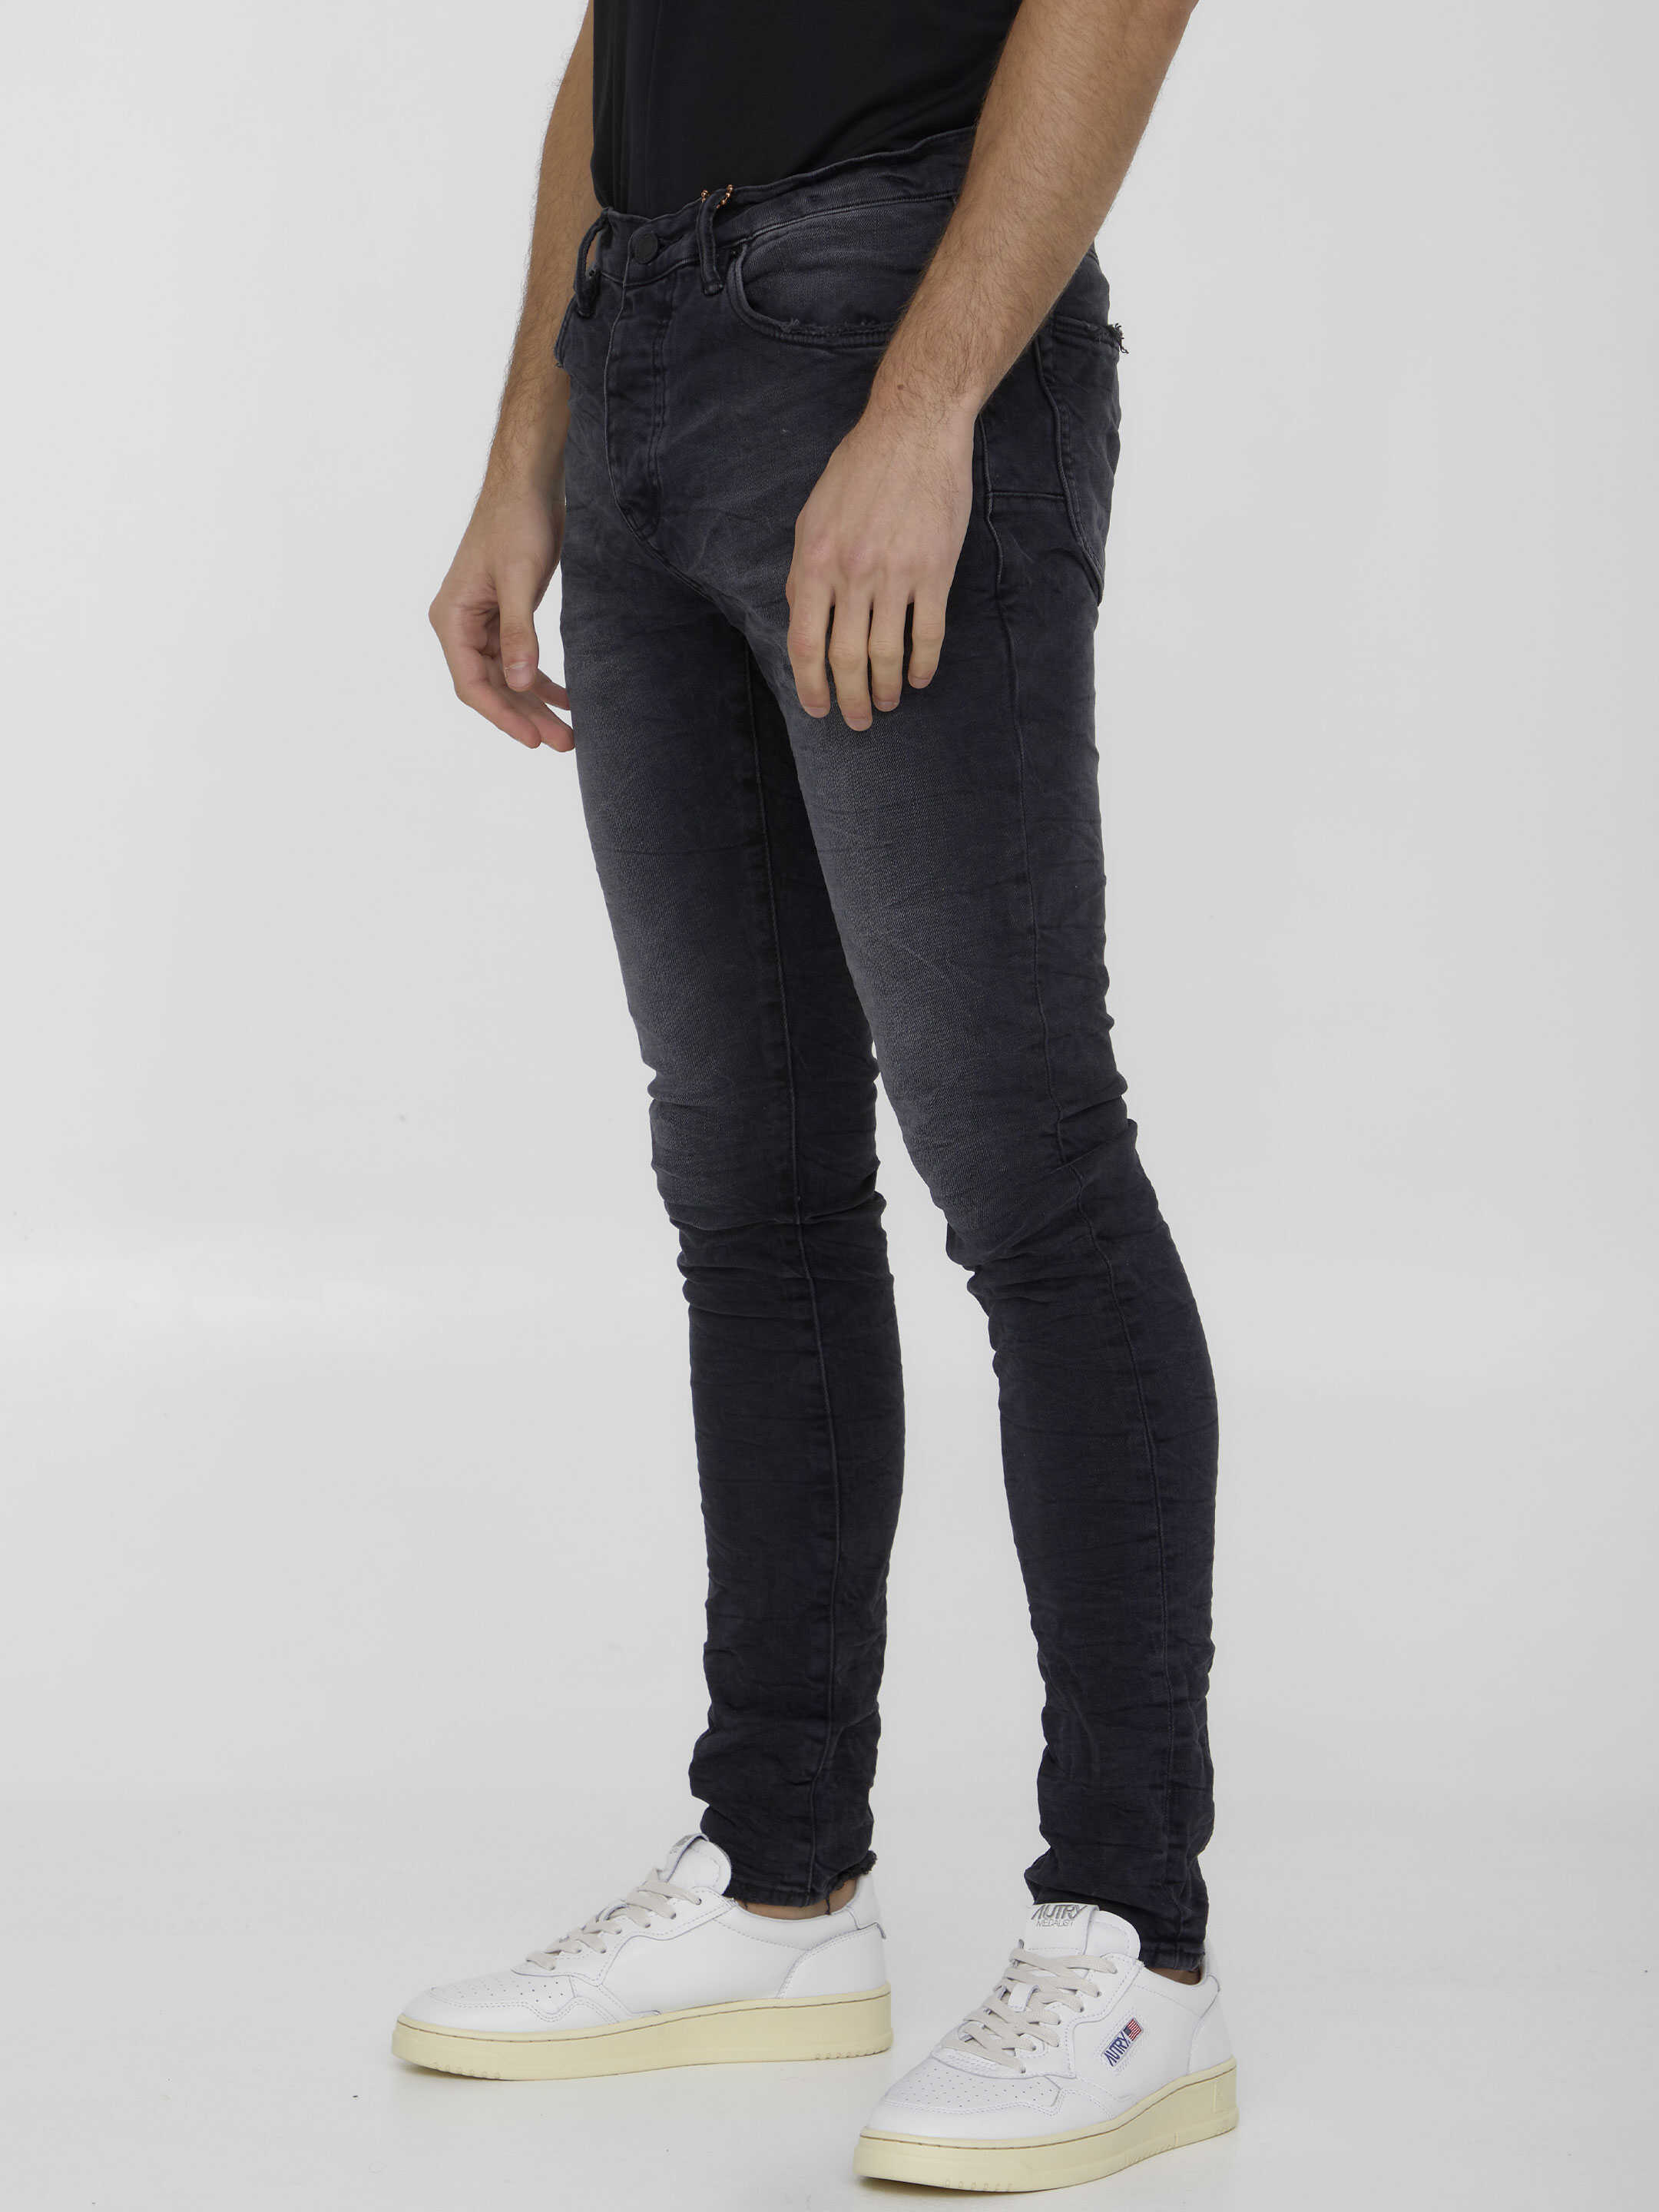 PURPLE BRAND Skinny Jeans In Denim BLACK